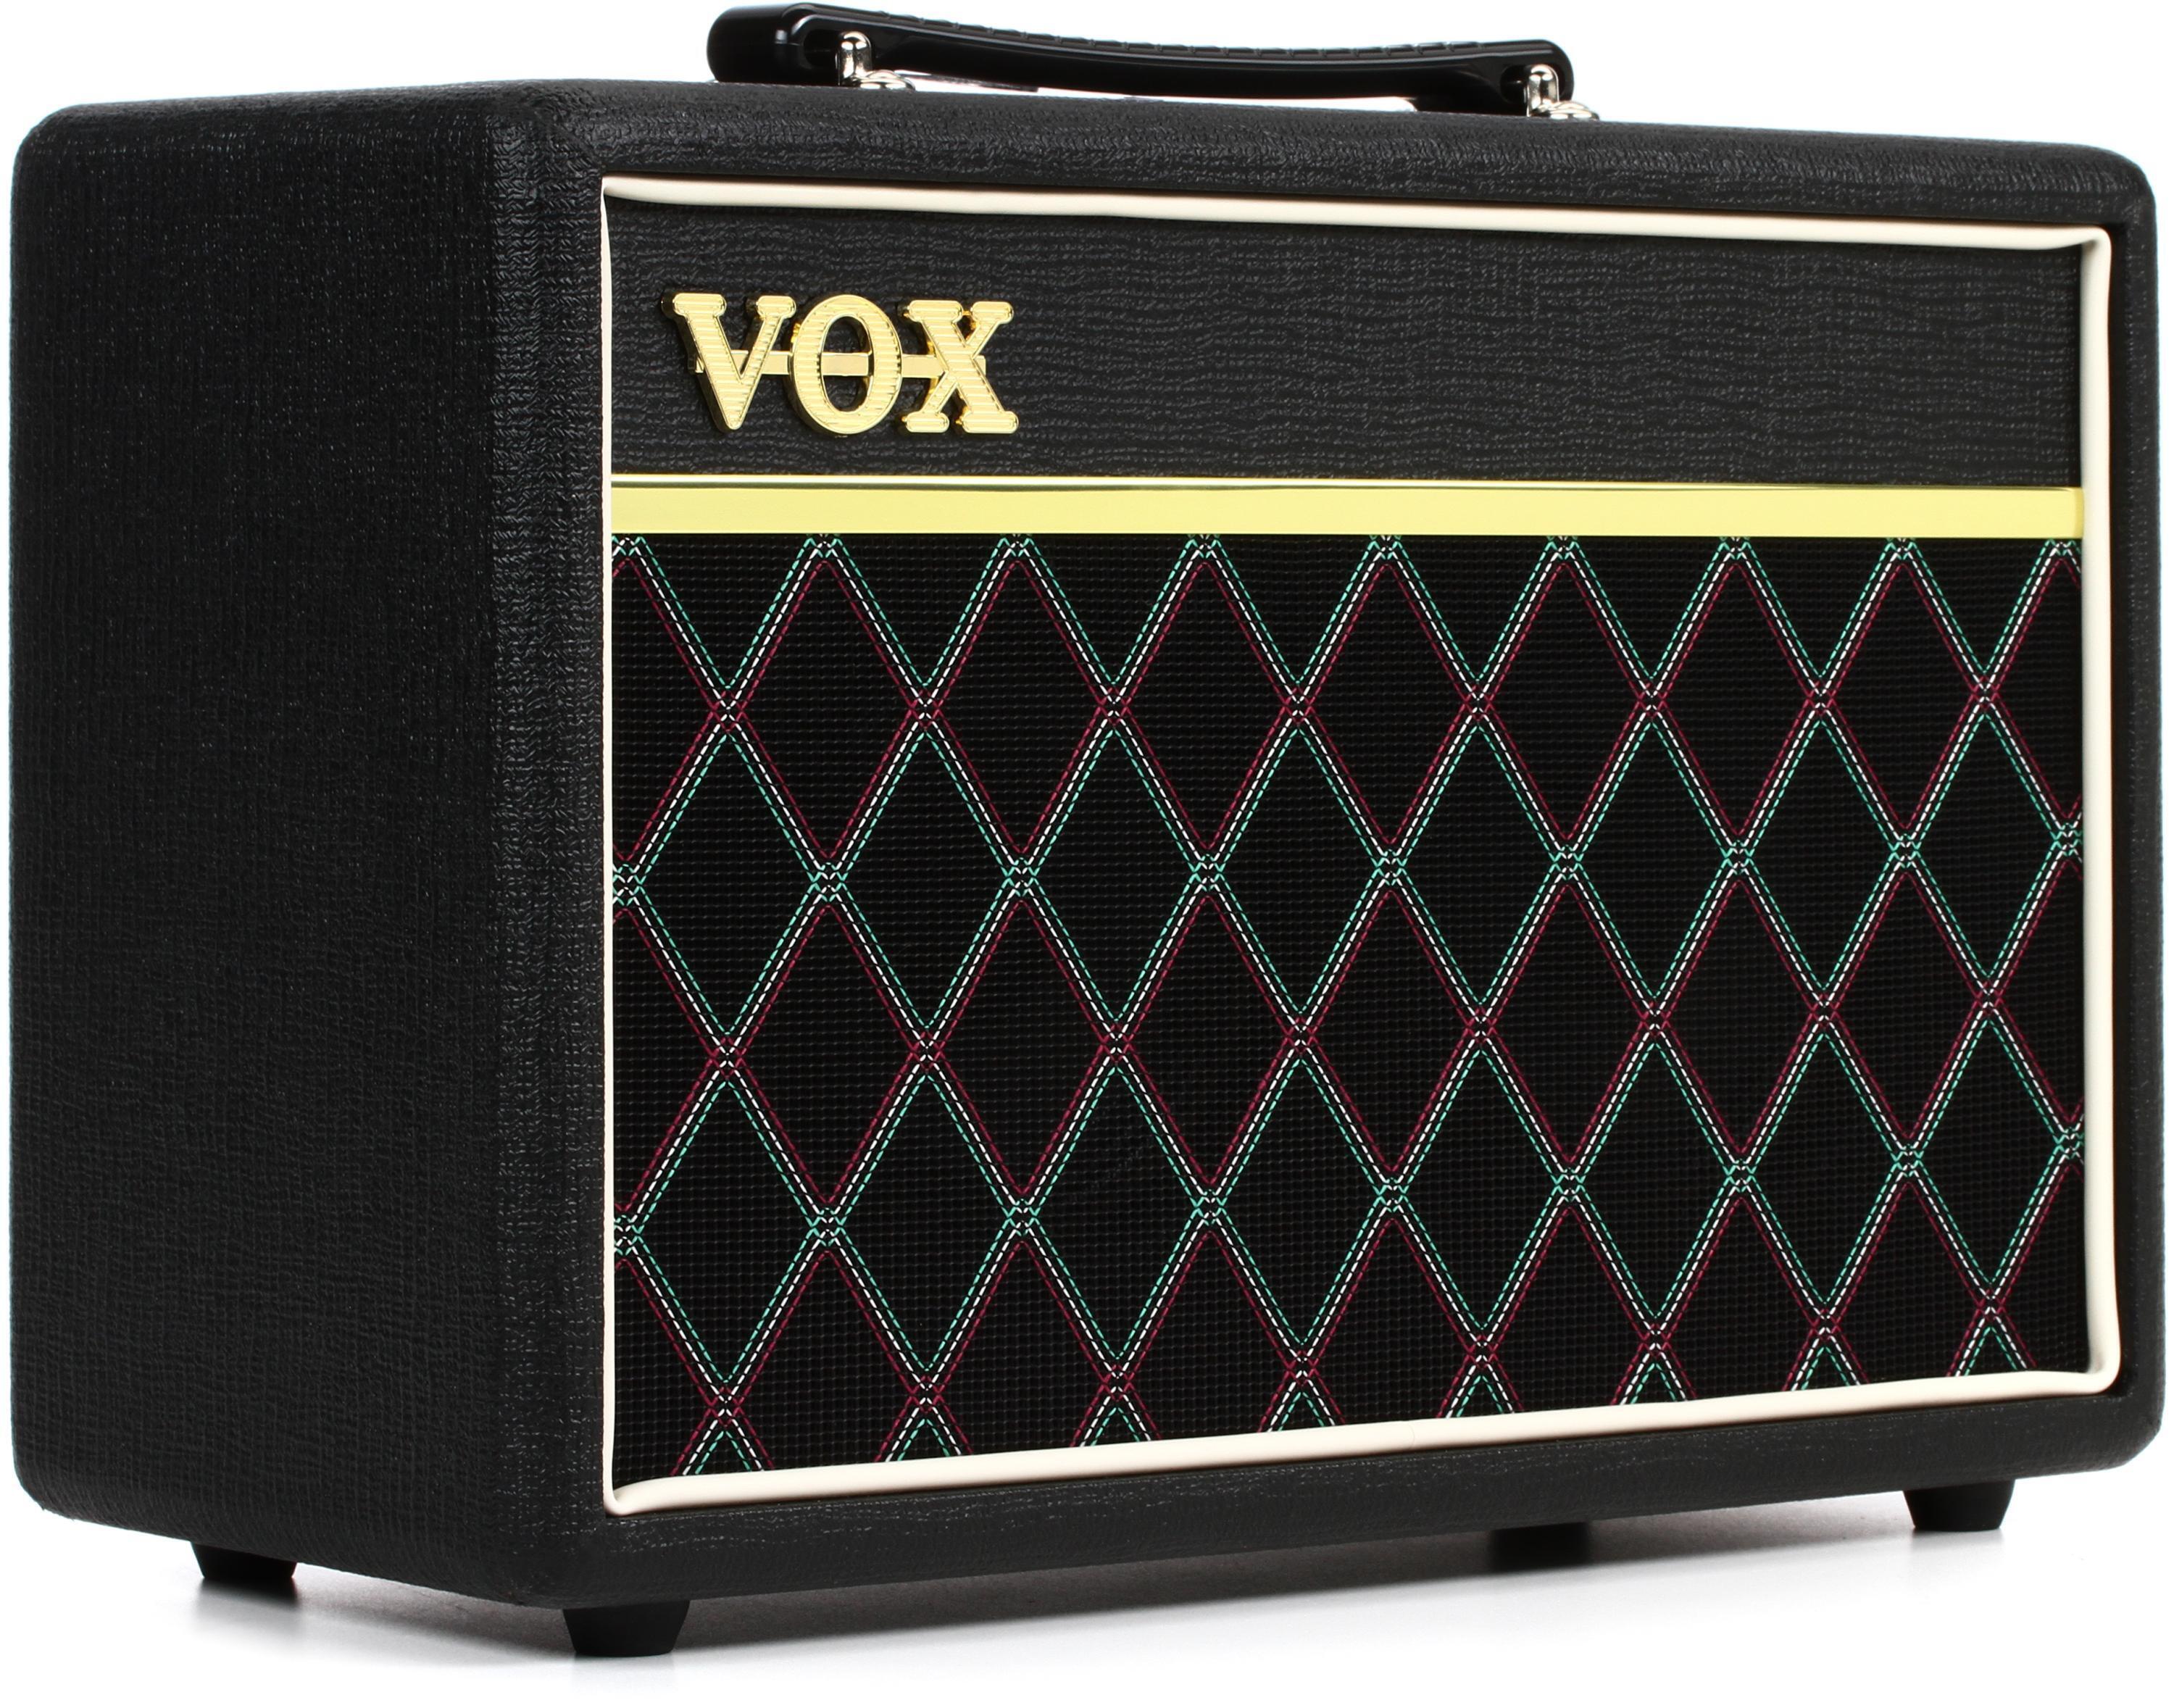 Bundled Item: Vox Pathfinder Bass 10 2x5" 10-watt Bass Combo Amp